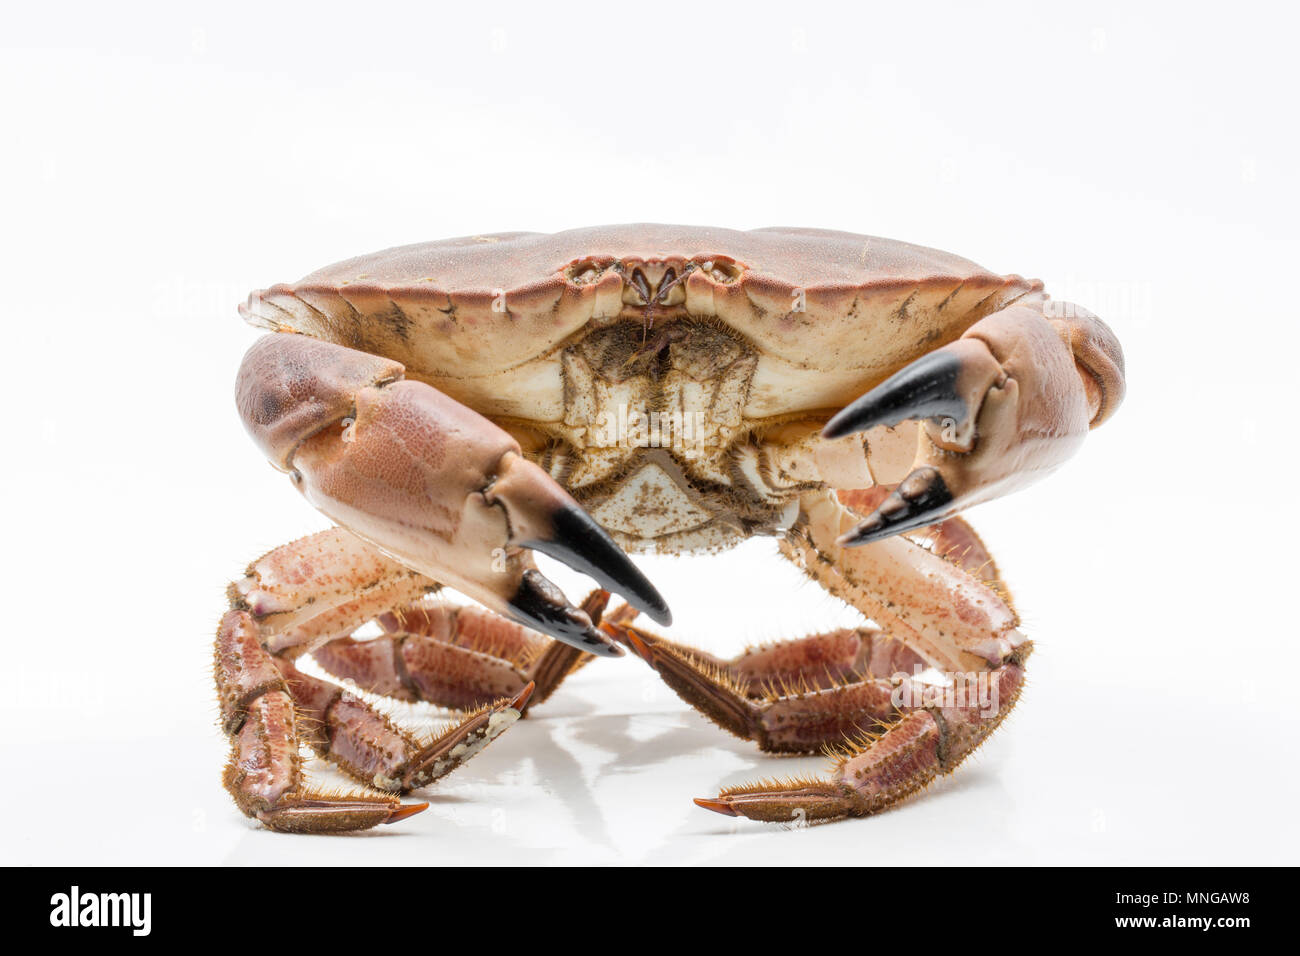 Une femme, ou de garçon, tourteau Cancer pagurus, pris dans un pot de crabe dans la Manche, au large de la côte du Dorset. Le crabe, ou des tourteaux, est cau Banque D'Images